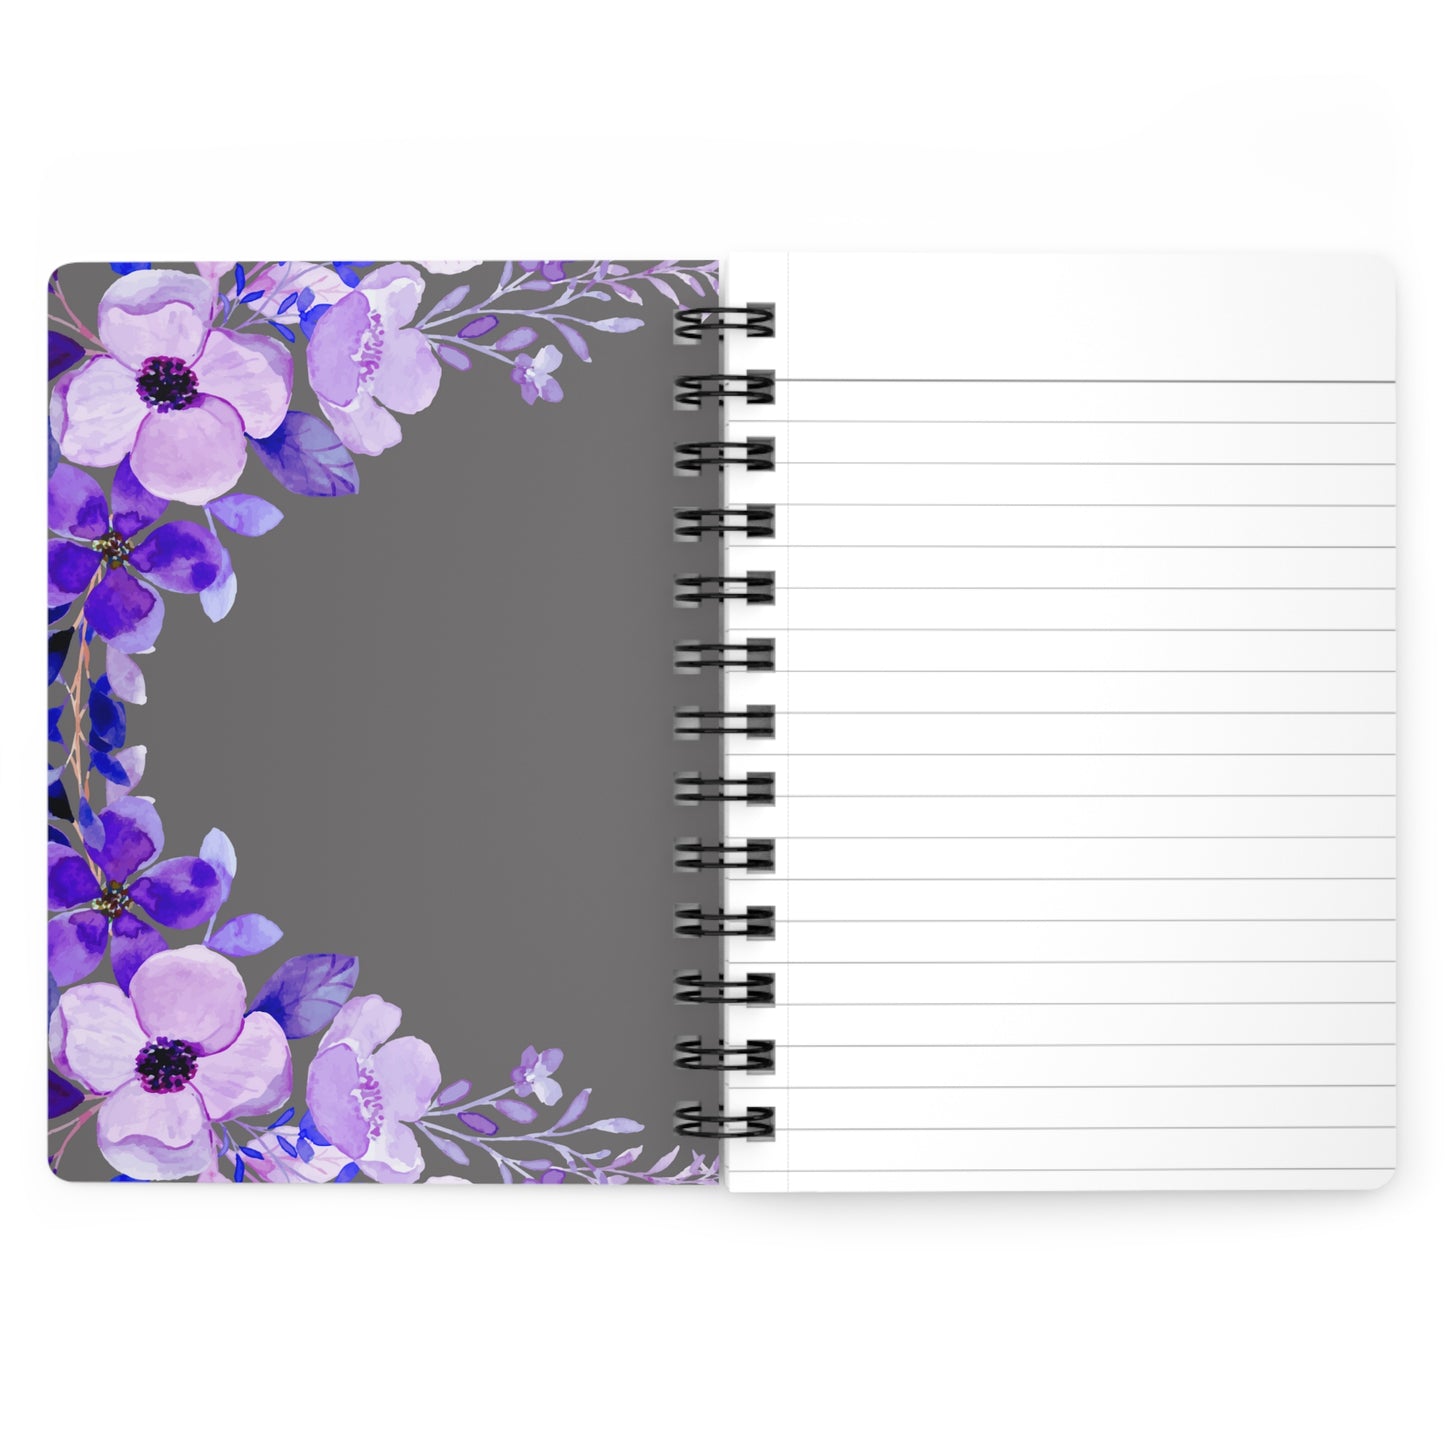 Lavender Vines Notebook, Flower Notebook, Flower Pattern Notebook, Pattern Notebook, College Notebook, School Notebook,  Spiral Bound Journal